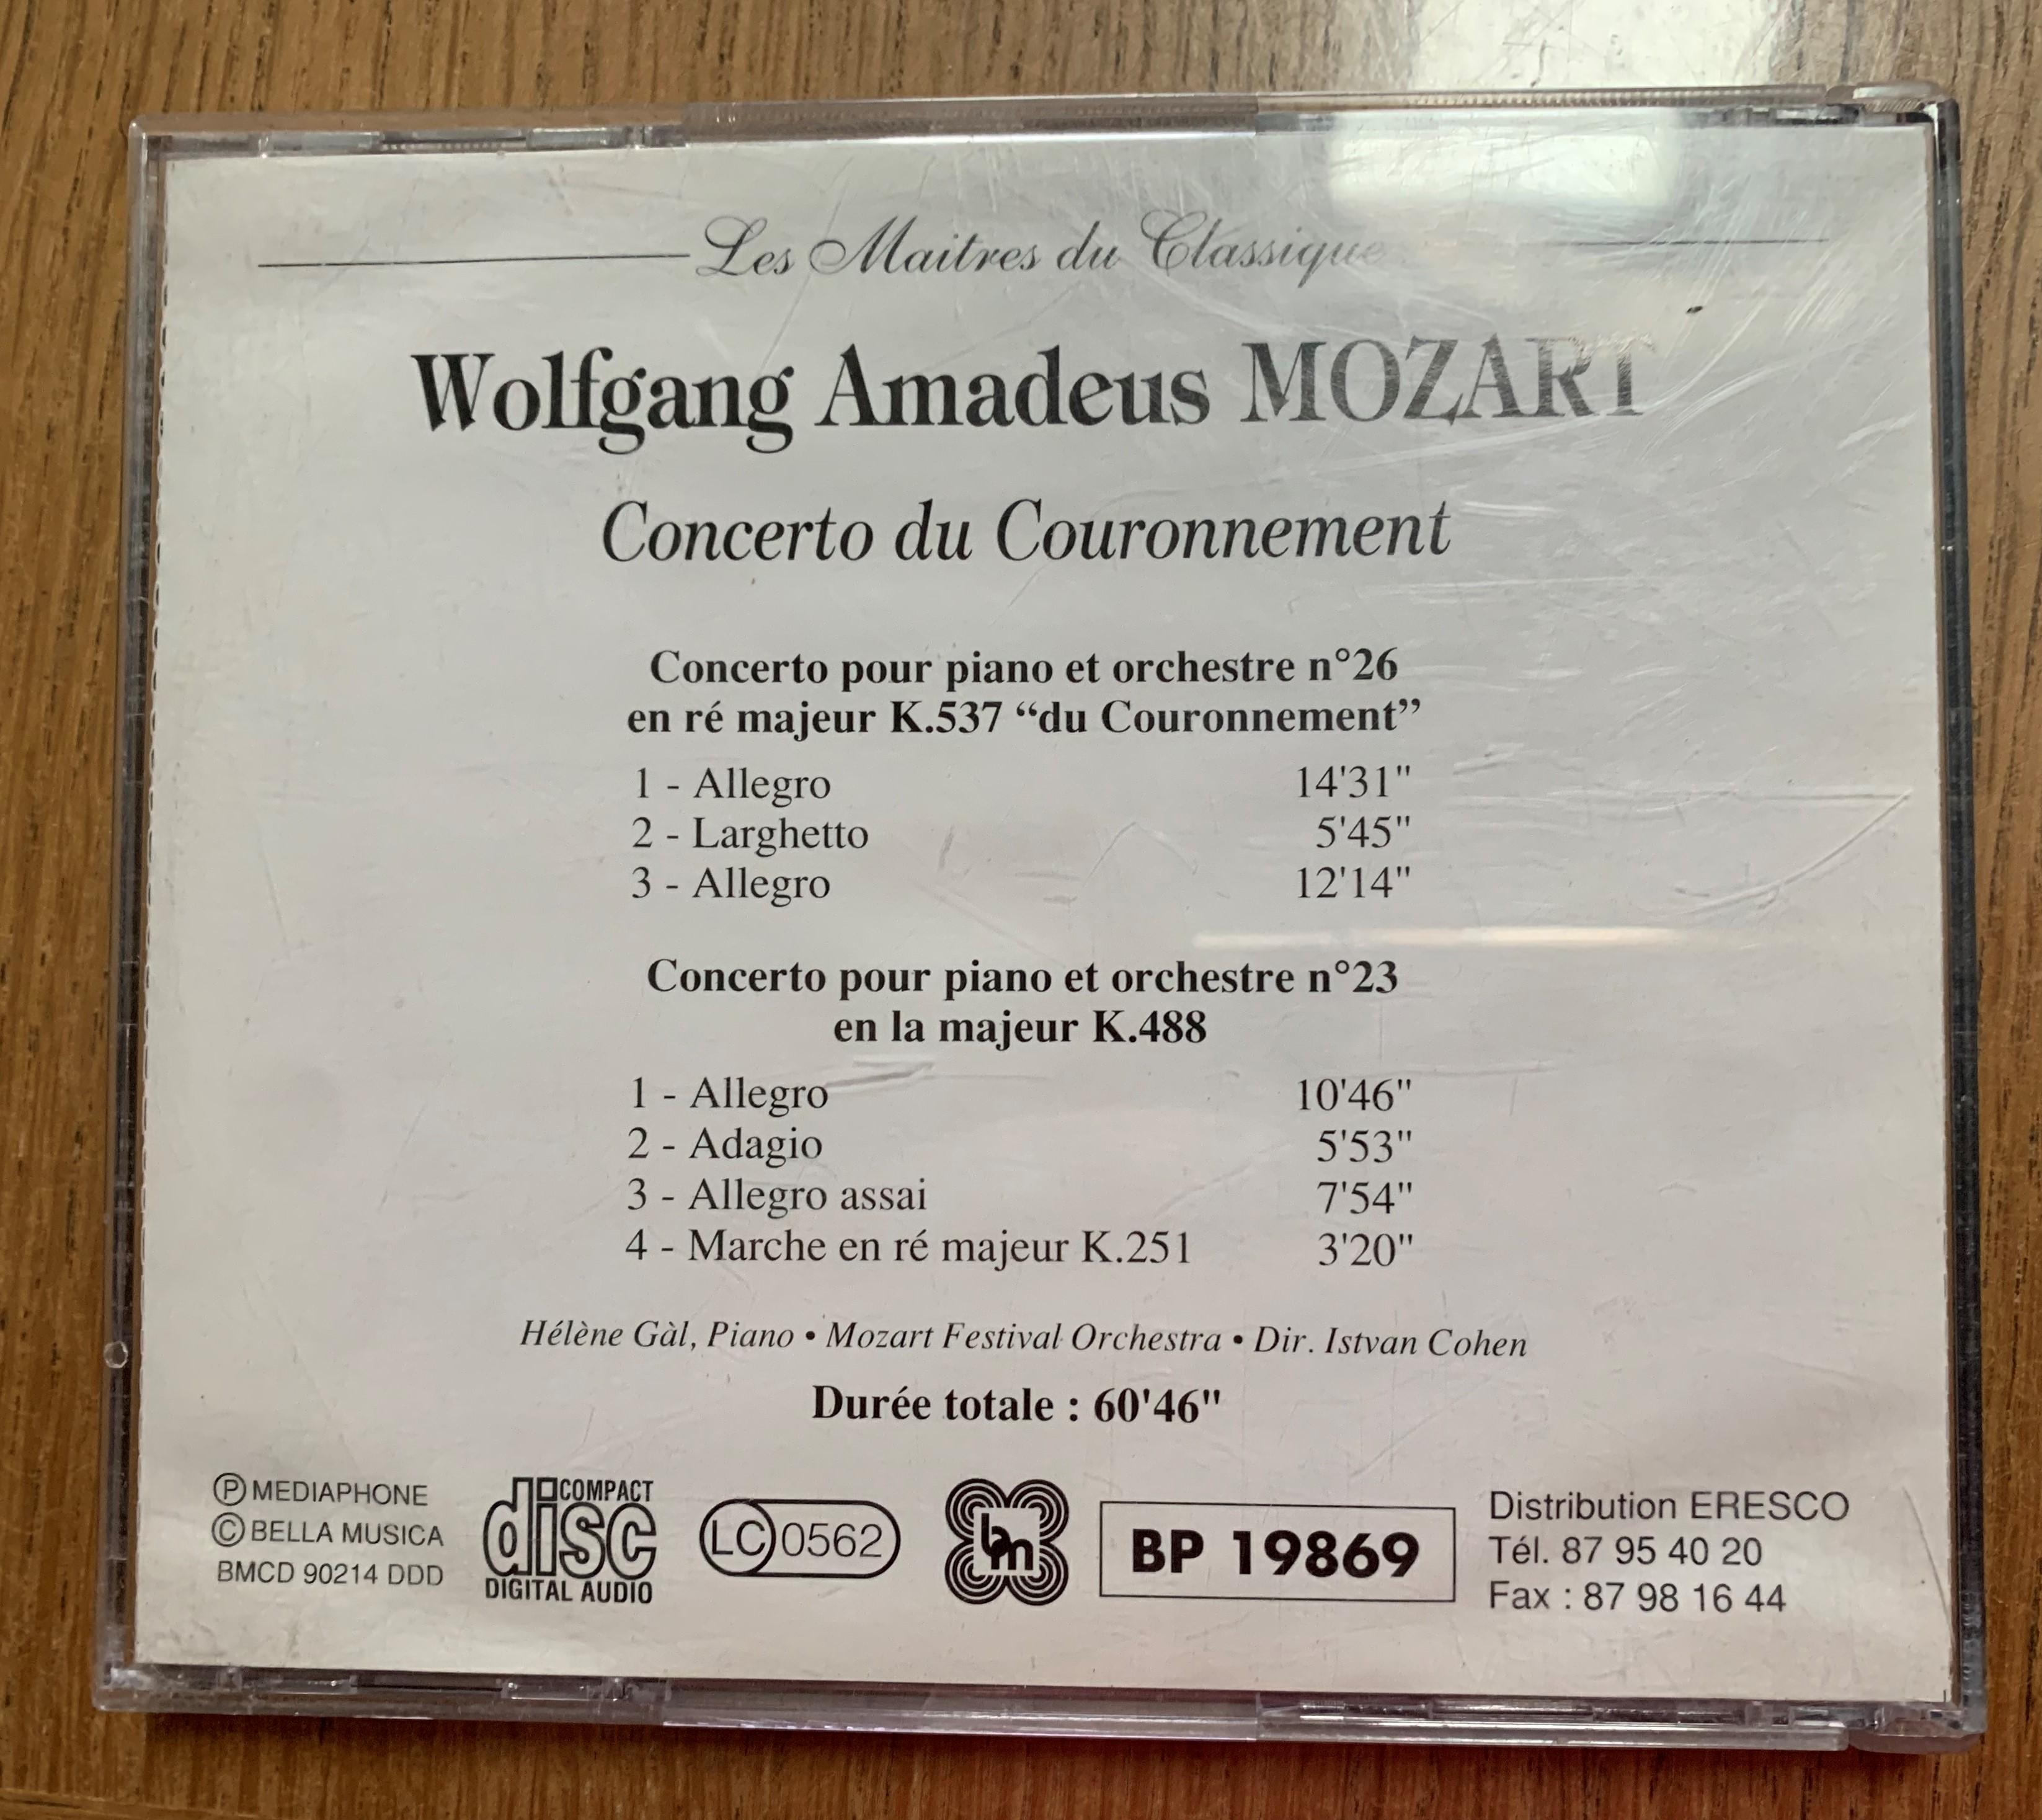 troc de troc cd mozart "concerto du couronnement" image 2